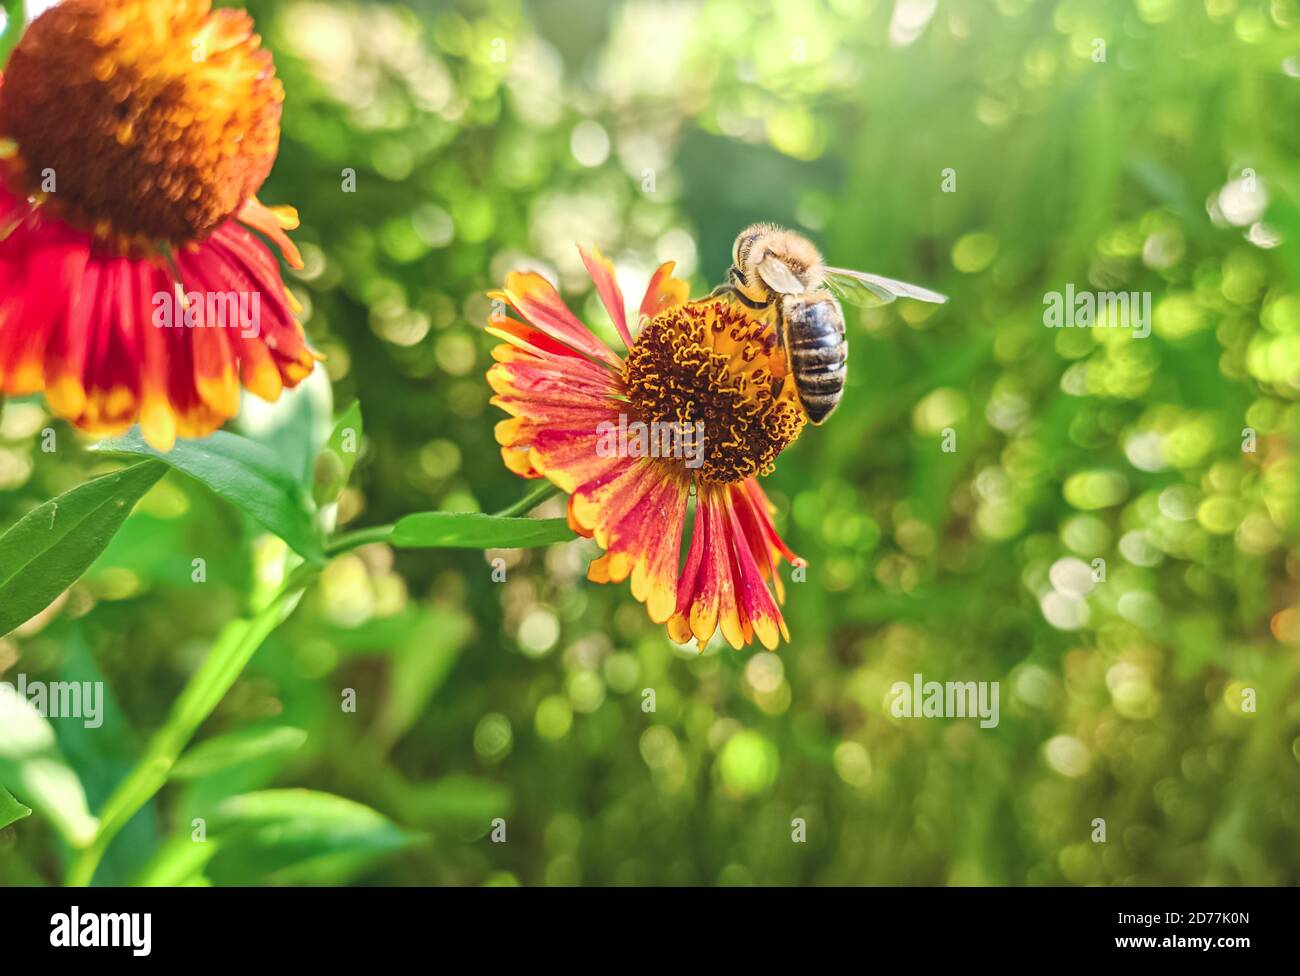 Honigbiene bedeckt mit gelben Pollen sammeln Nektar in der Blüte. Tier sitzt Sammeln in sonnigen Sommer Sonnenblume. Wichtig für Umwelt-ec Stockfoto